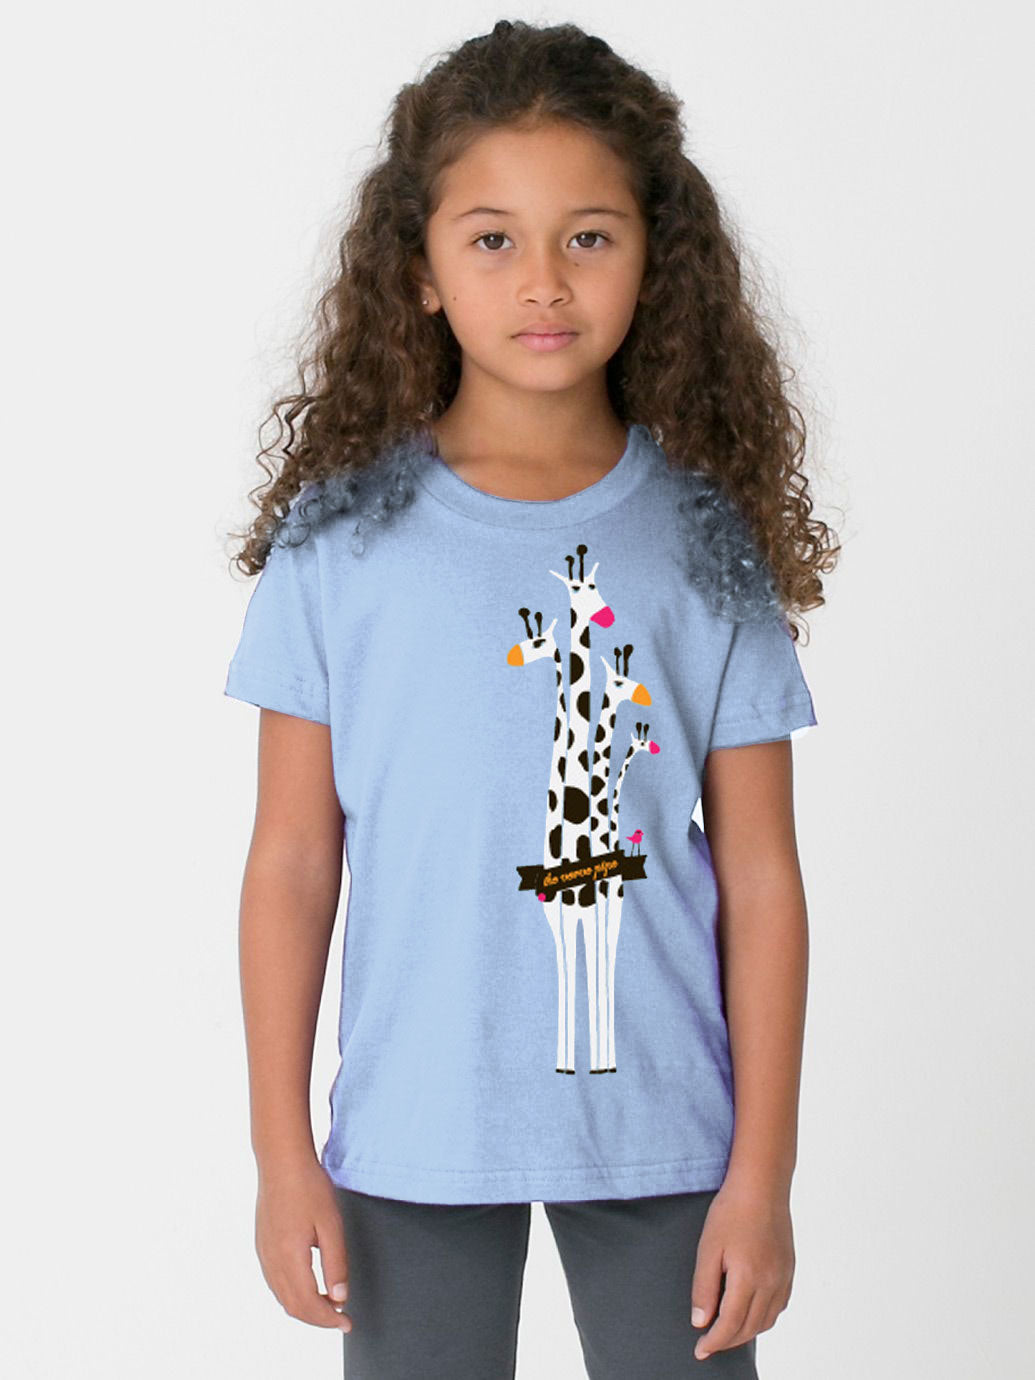 Kid's Giraffe T-Shirt (Baby Blue)